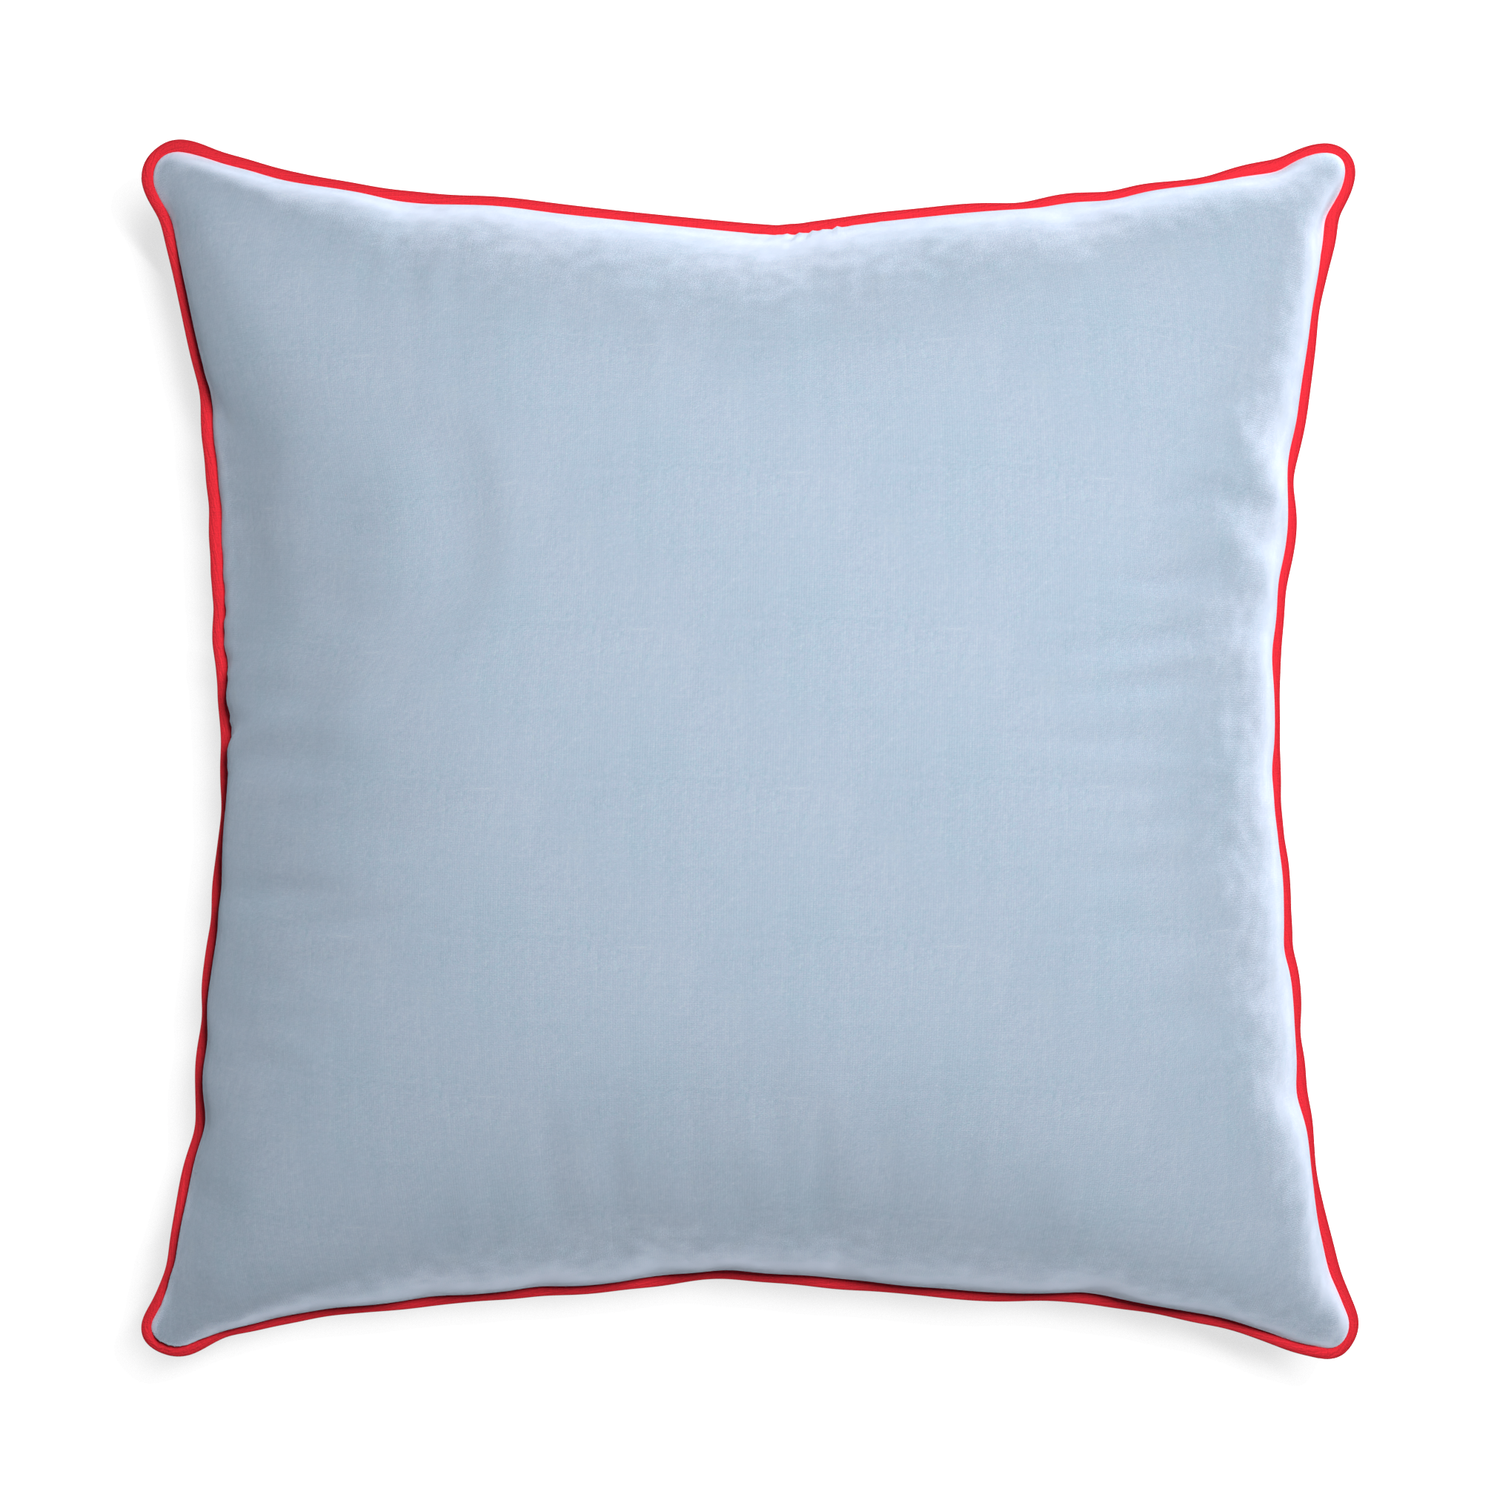 Euro-sham sky velvet custom pillow with cherry piping on white background